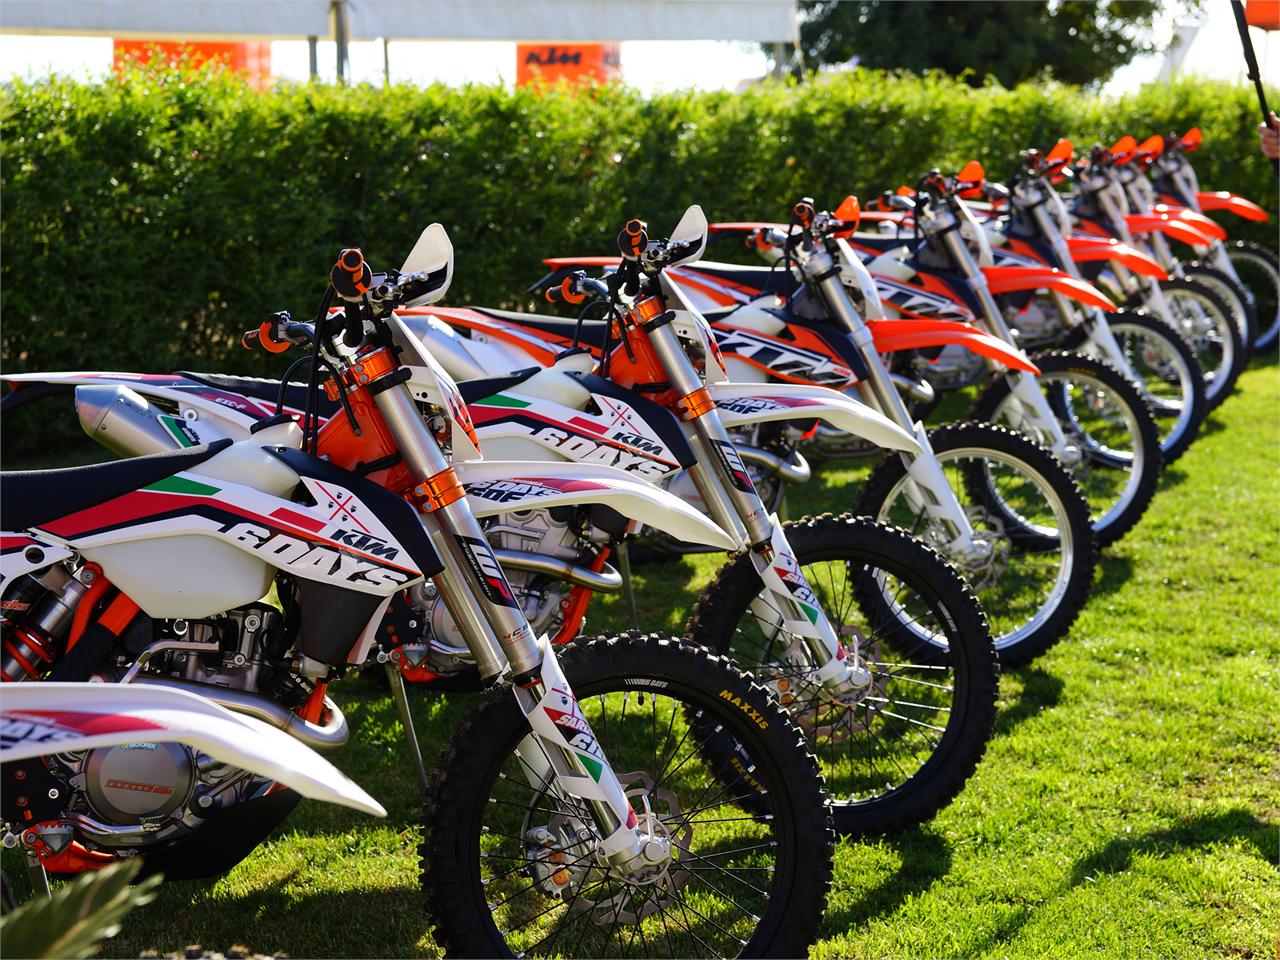 Milanuncios - Funda asiento moto KTM